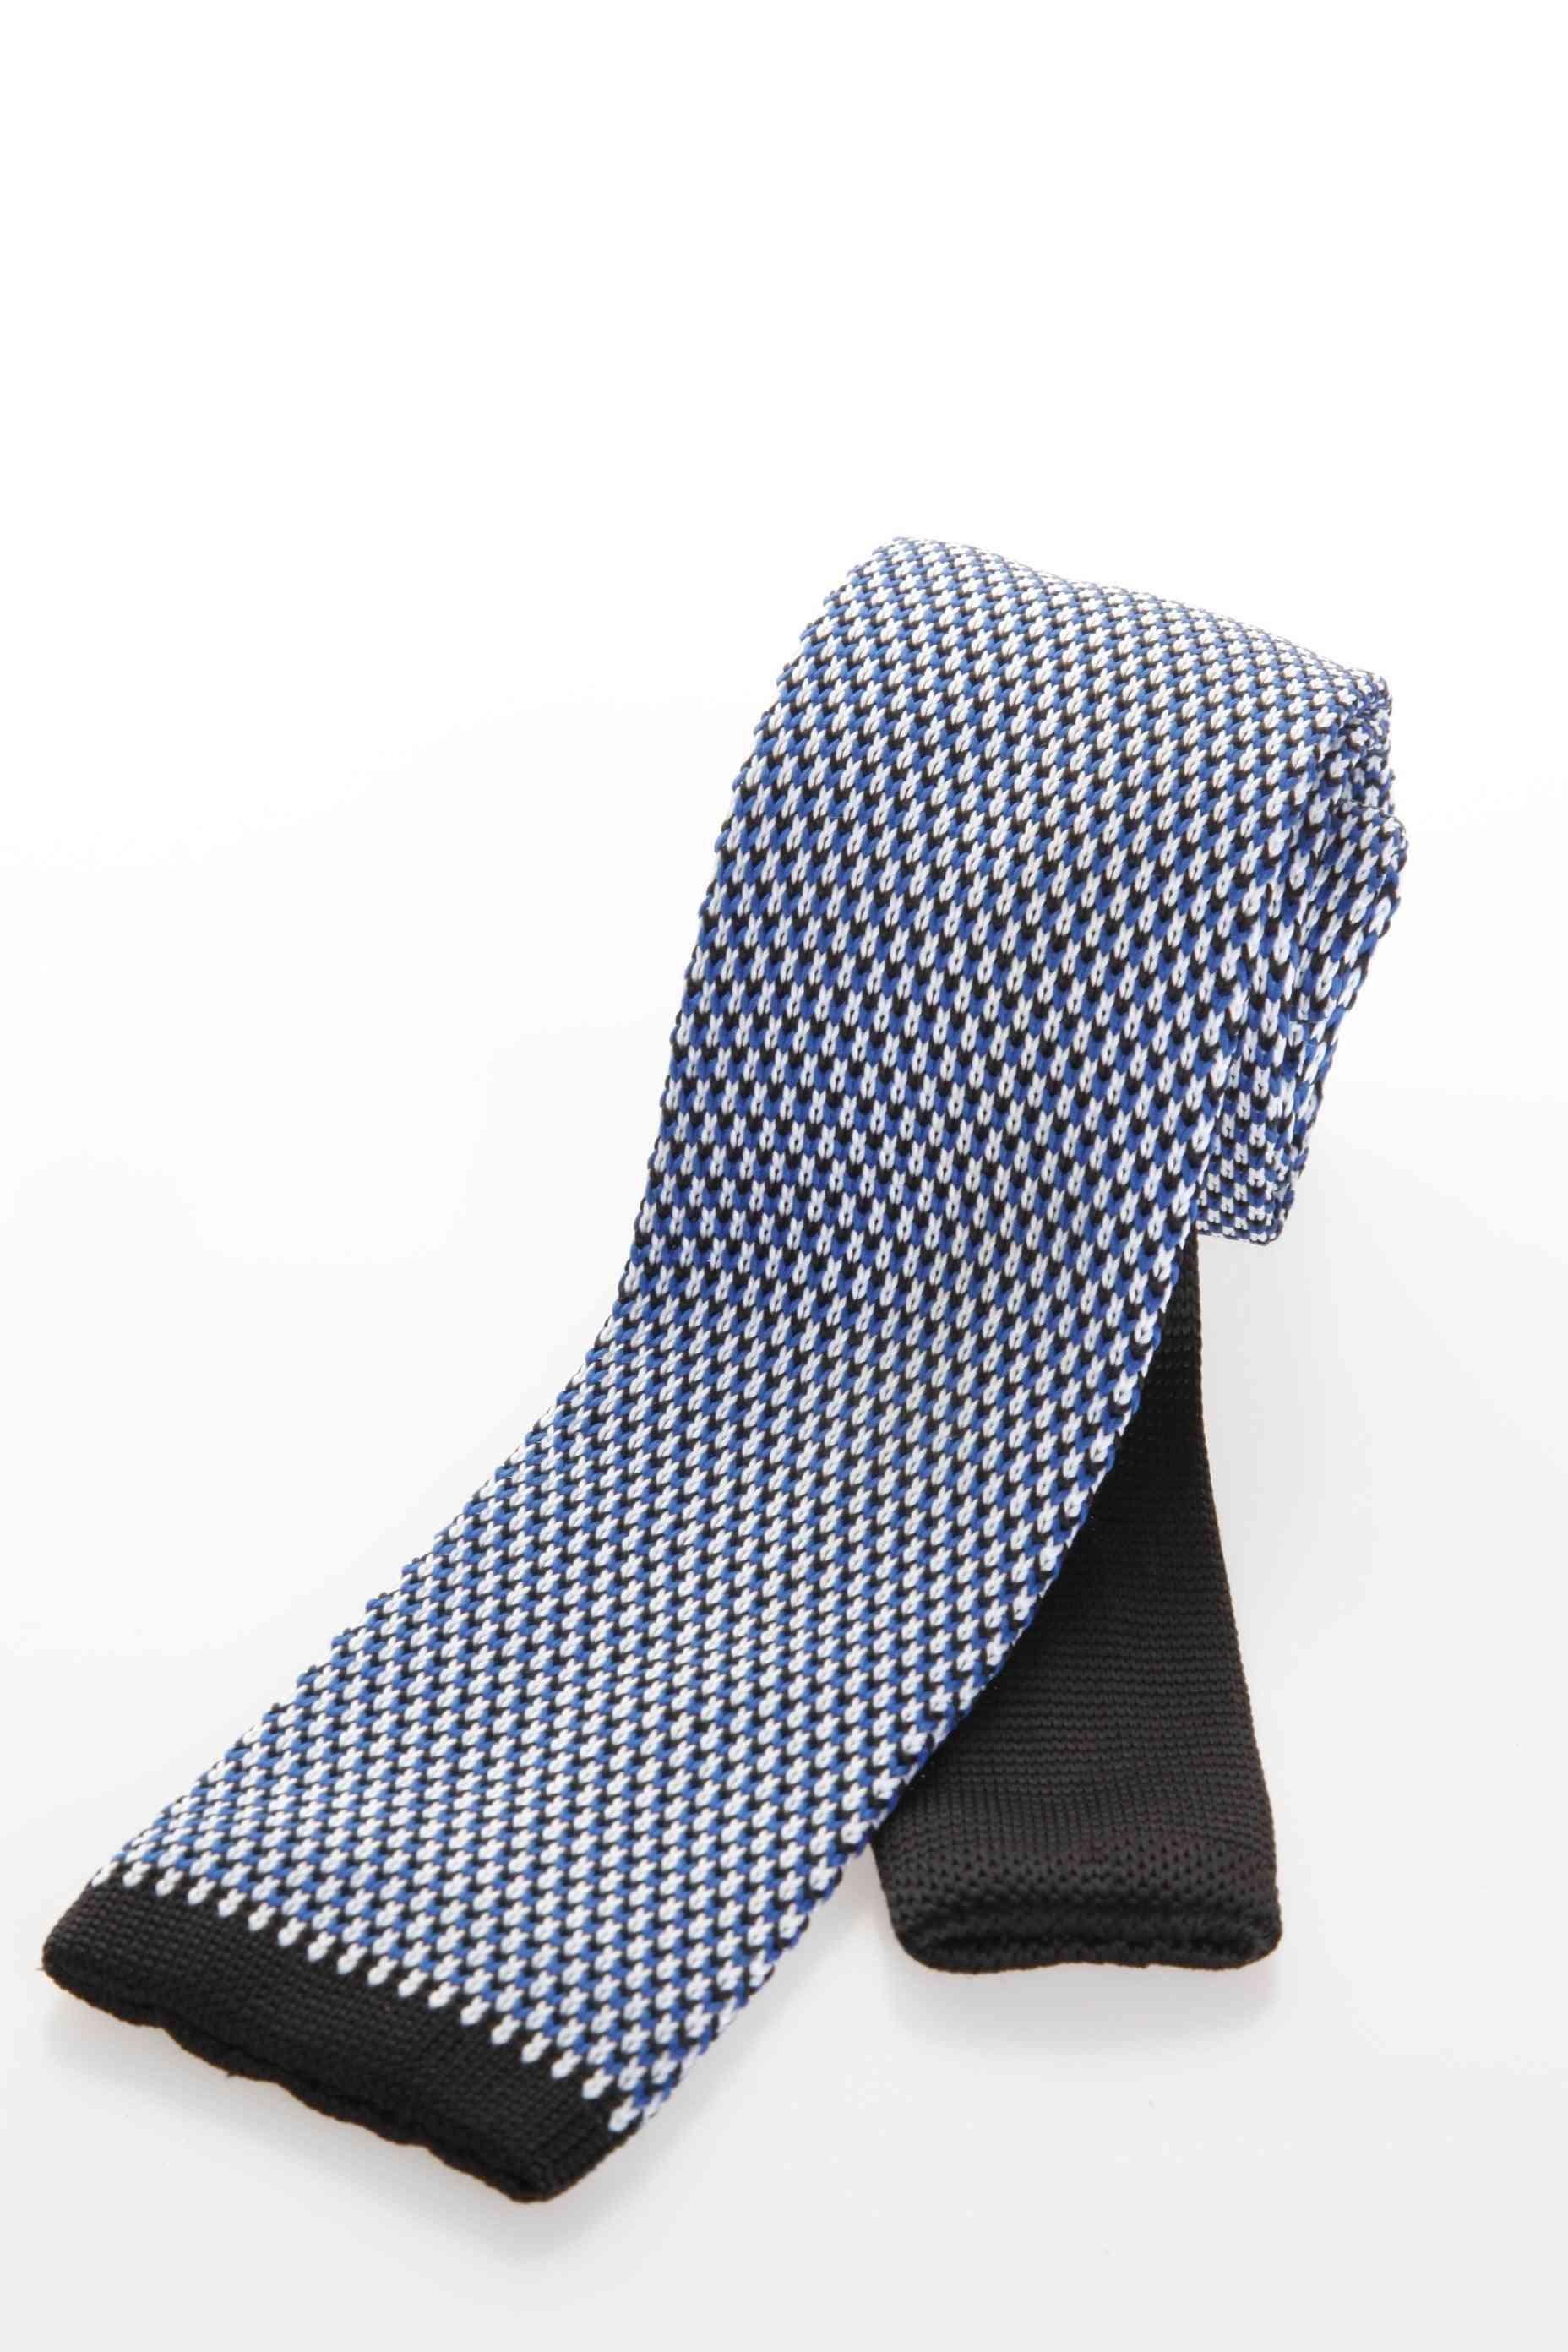 štýlová a elegantná pletená kravata